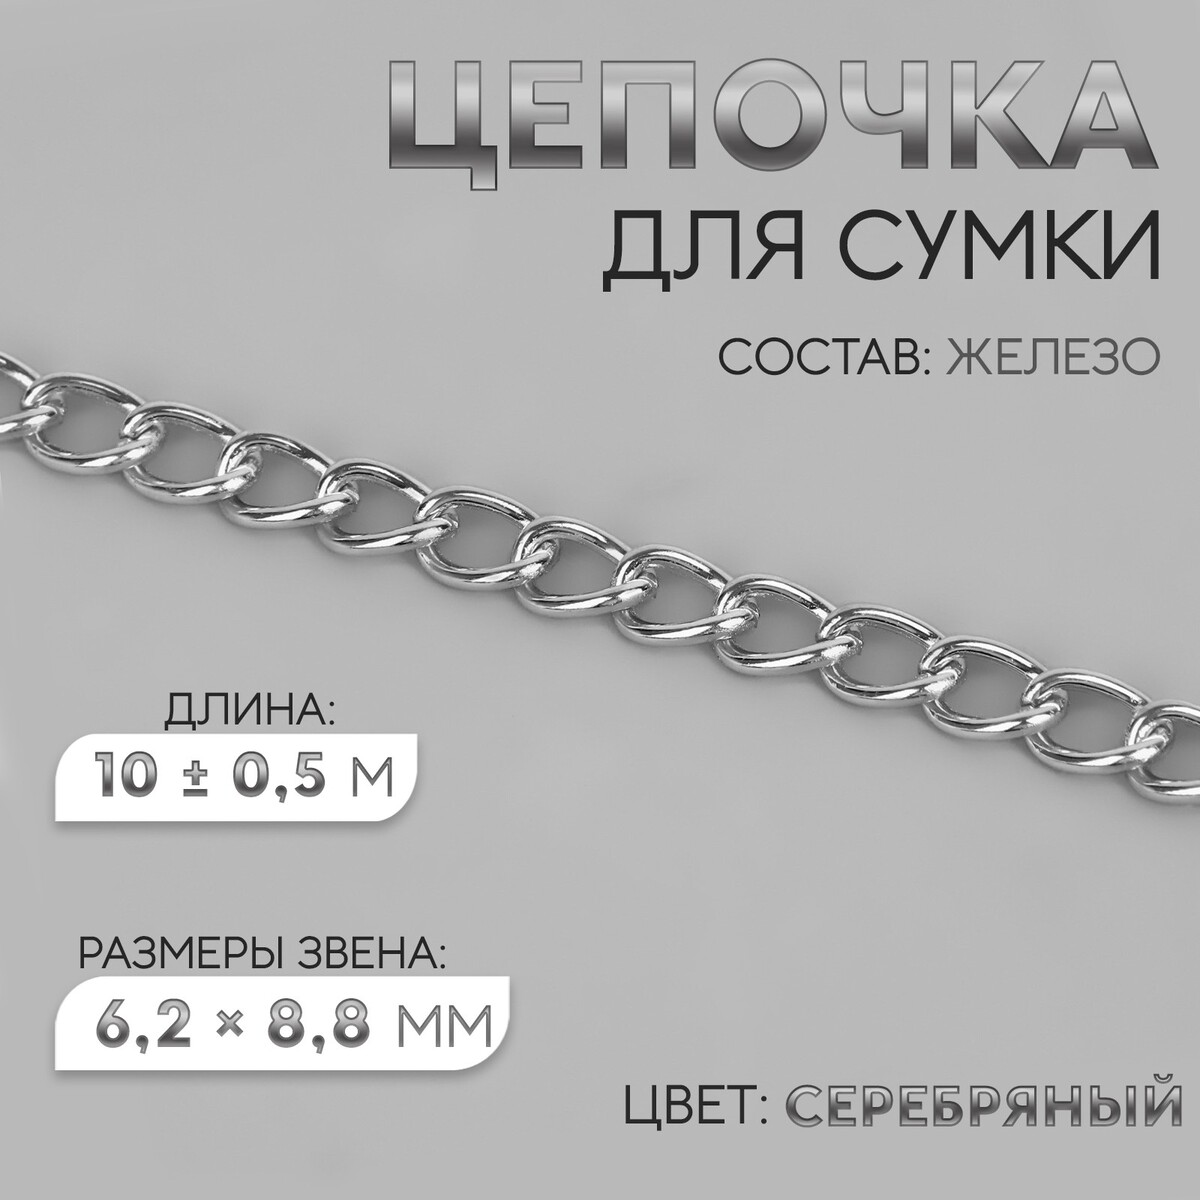 Цепочка для сумки, железная, 6,2 × 8,8 мм, 10 ± 0,5 м, цвет серебряный цепочка для сумки железная 7 × 11 мм 10 ± 0 5 м серебряный